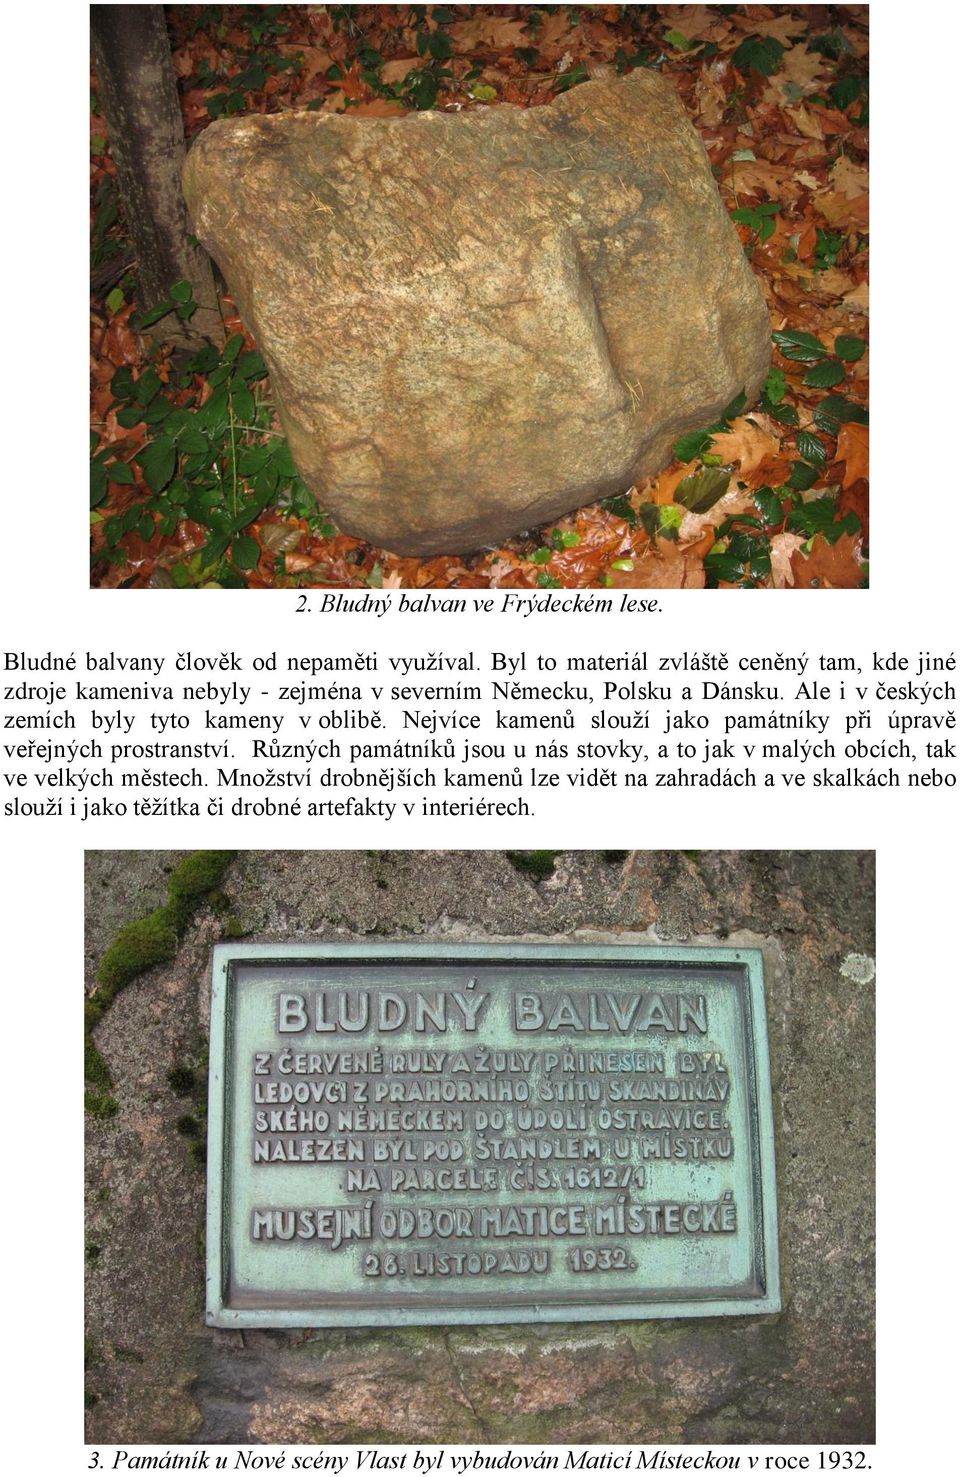 Ale i v českých zemích byly tyto kameny v oblibě. Nejvíce kamenů slouží jako památníky při úpravě veřejných prostranství.